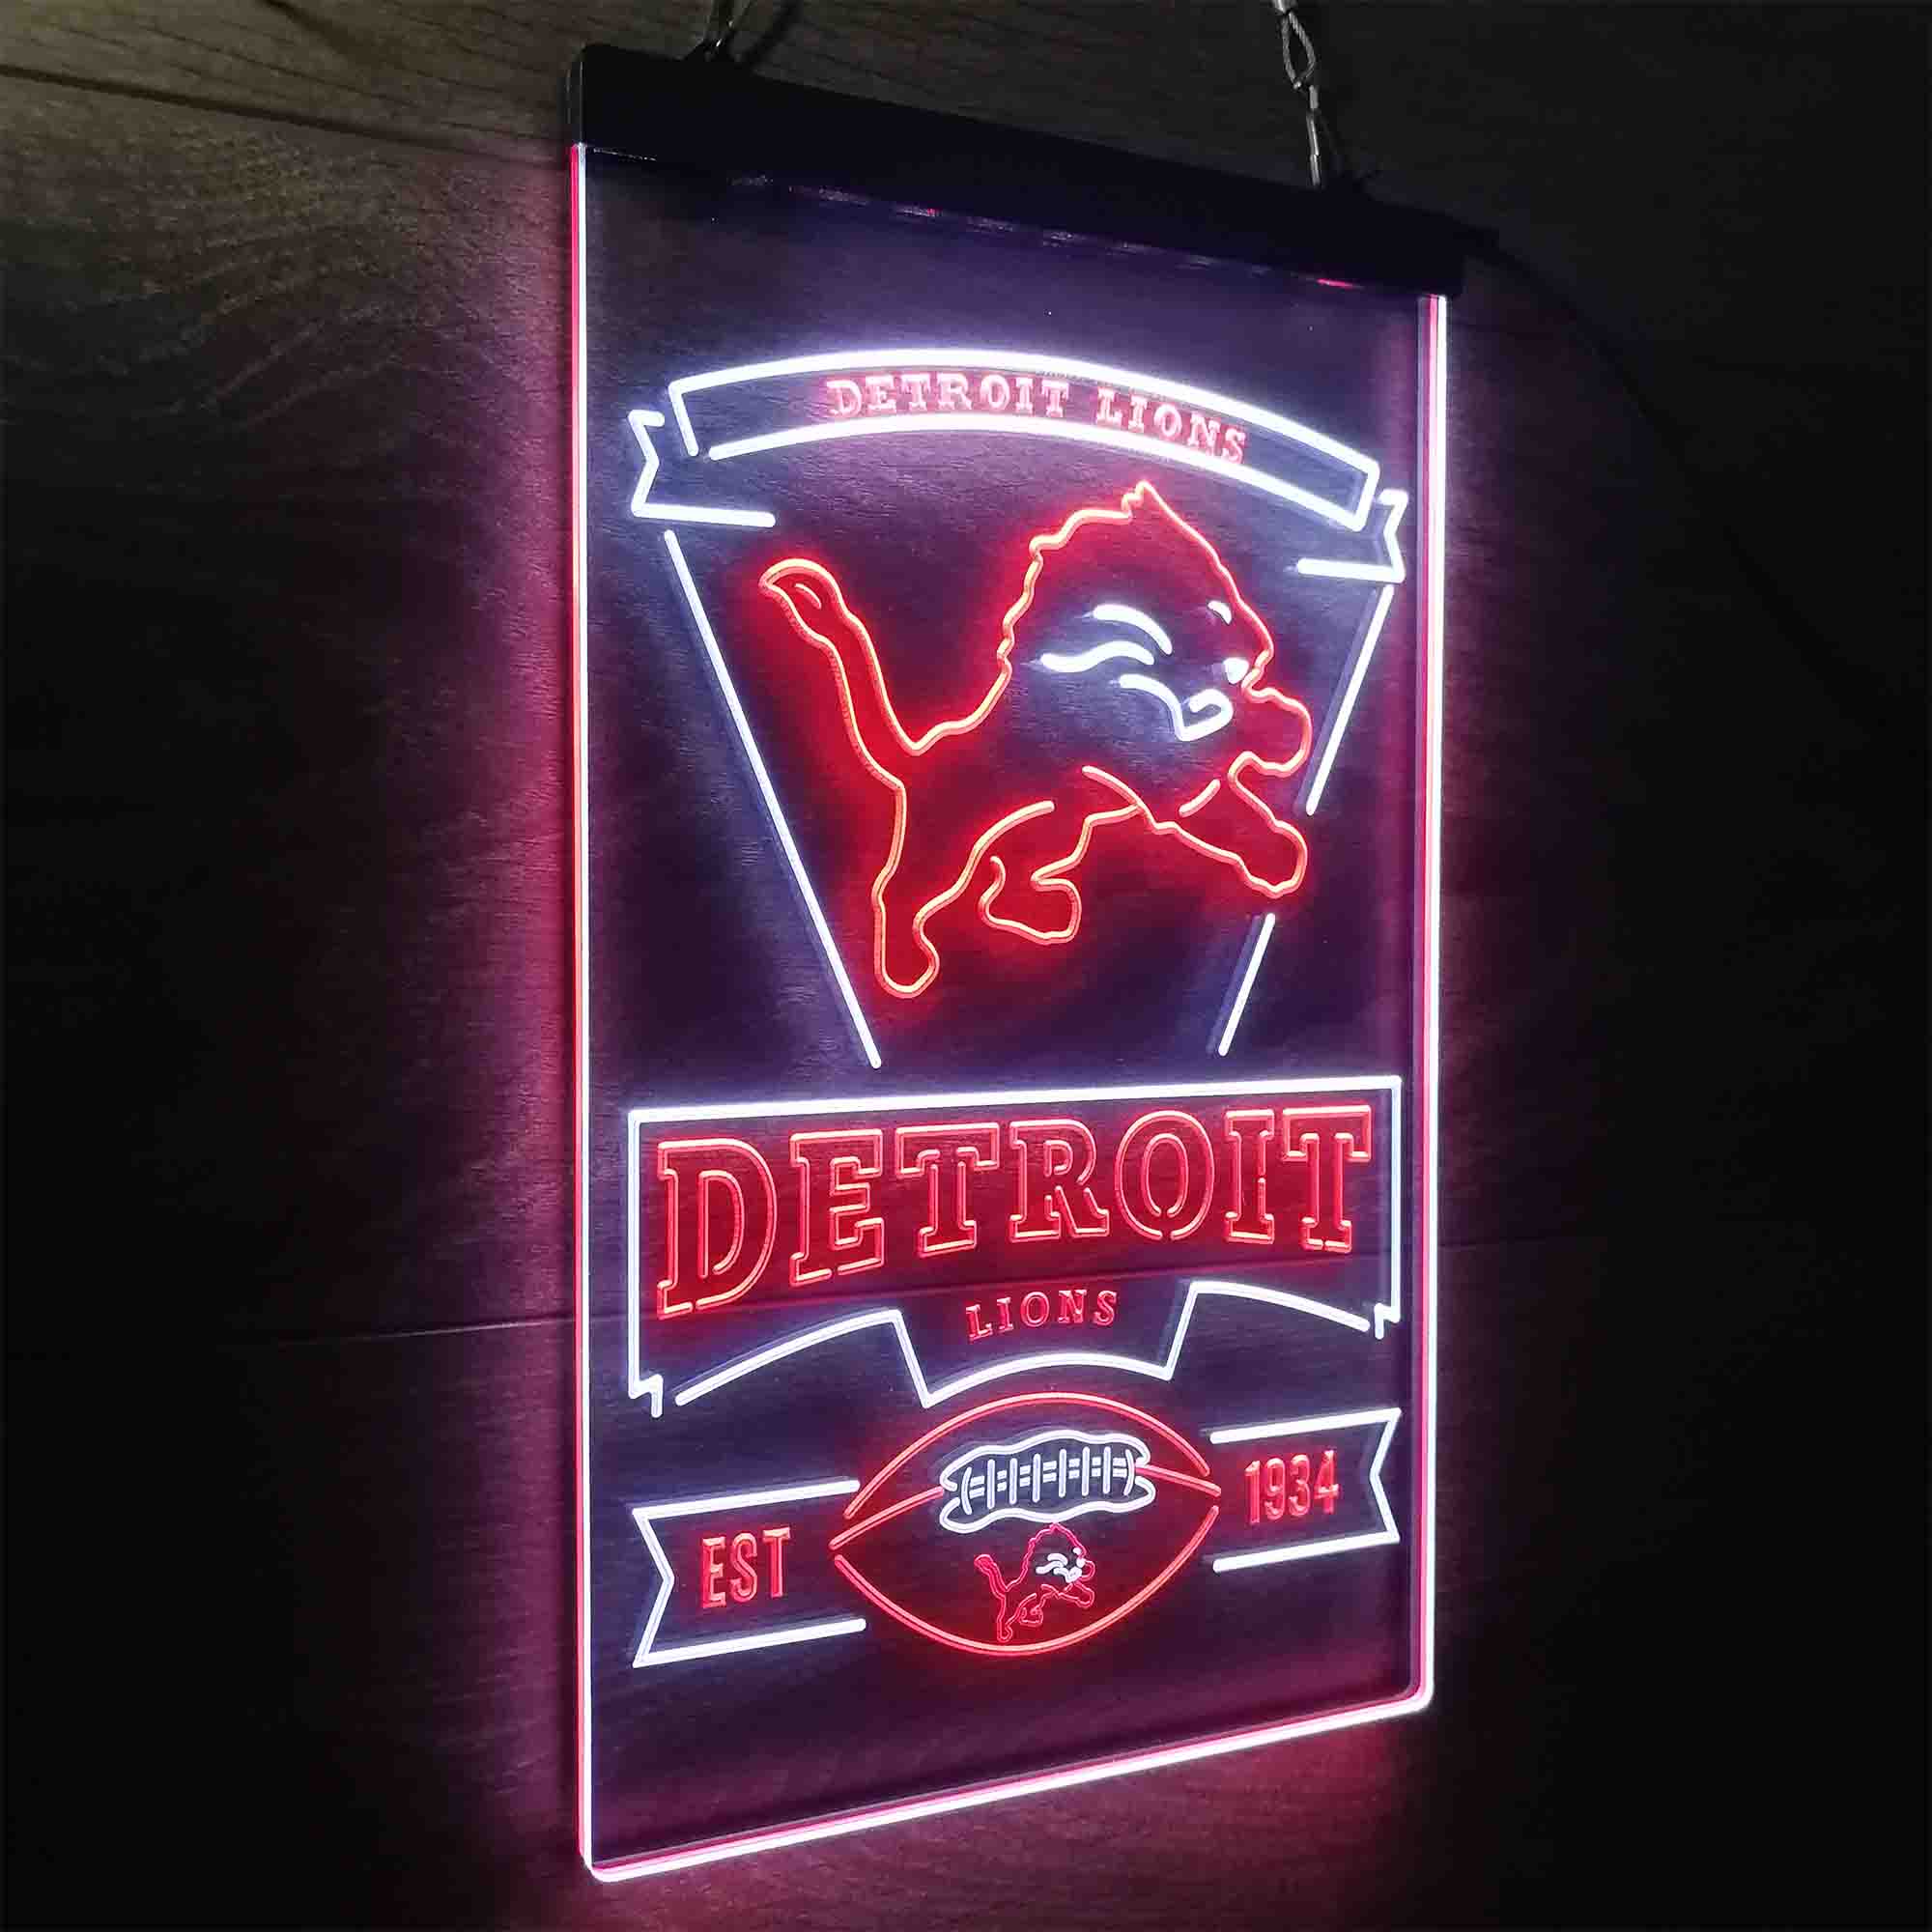 Detroit Lions Est. 1934 LED Neon Sign